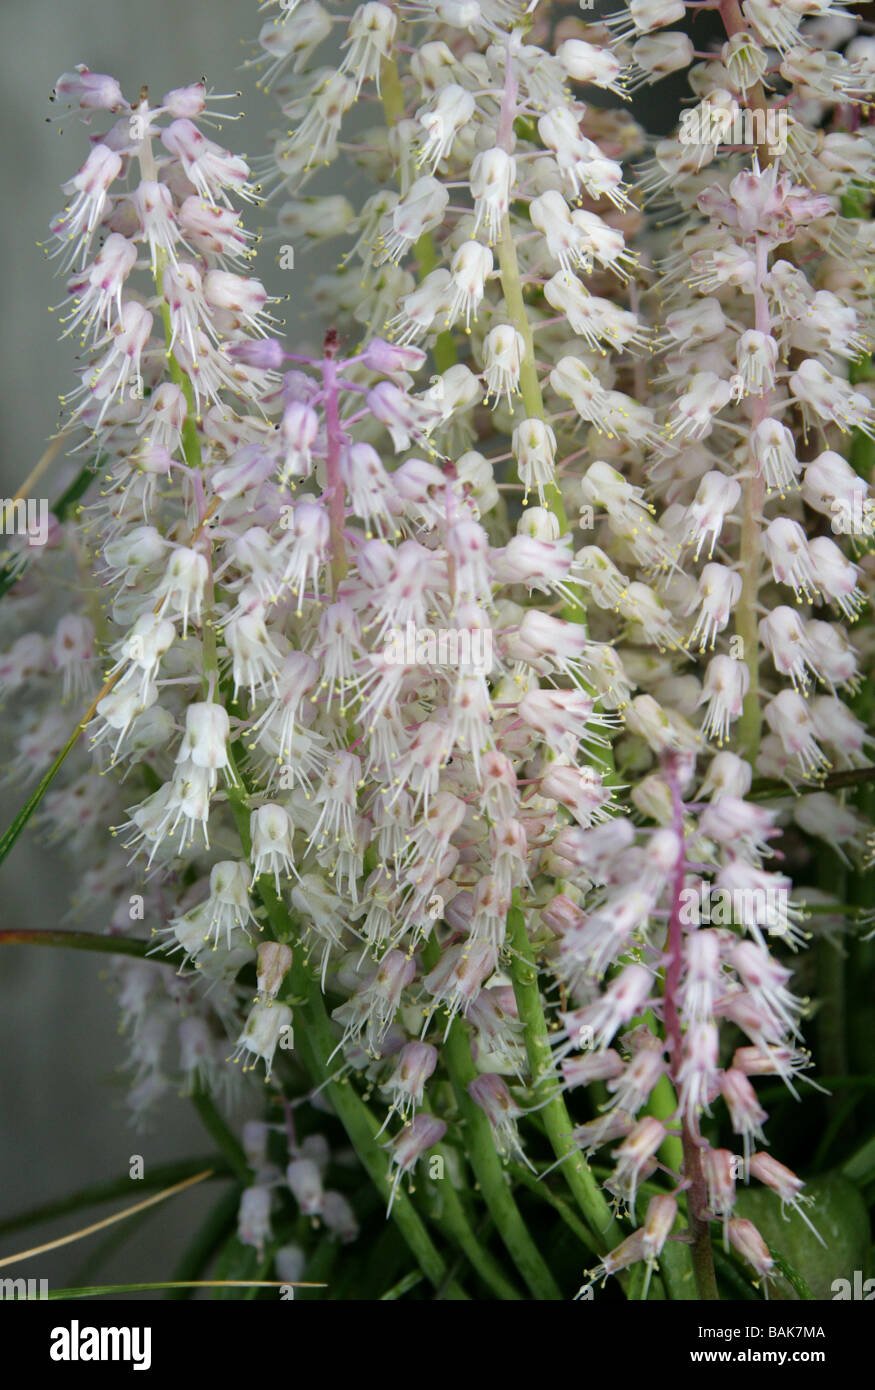 Lachenalia latimerae, Hyacinthaceae, South Africa Stock Photo